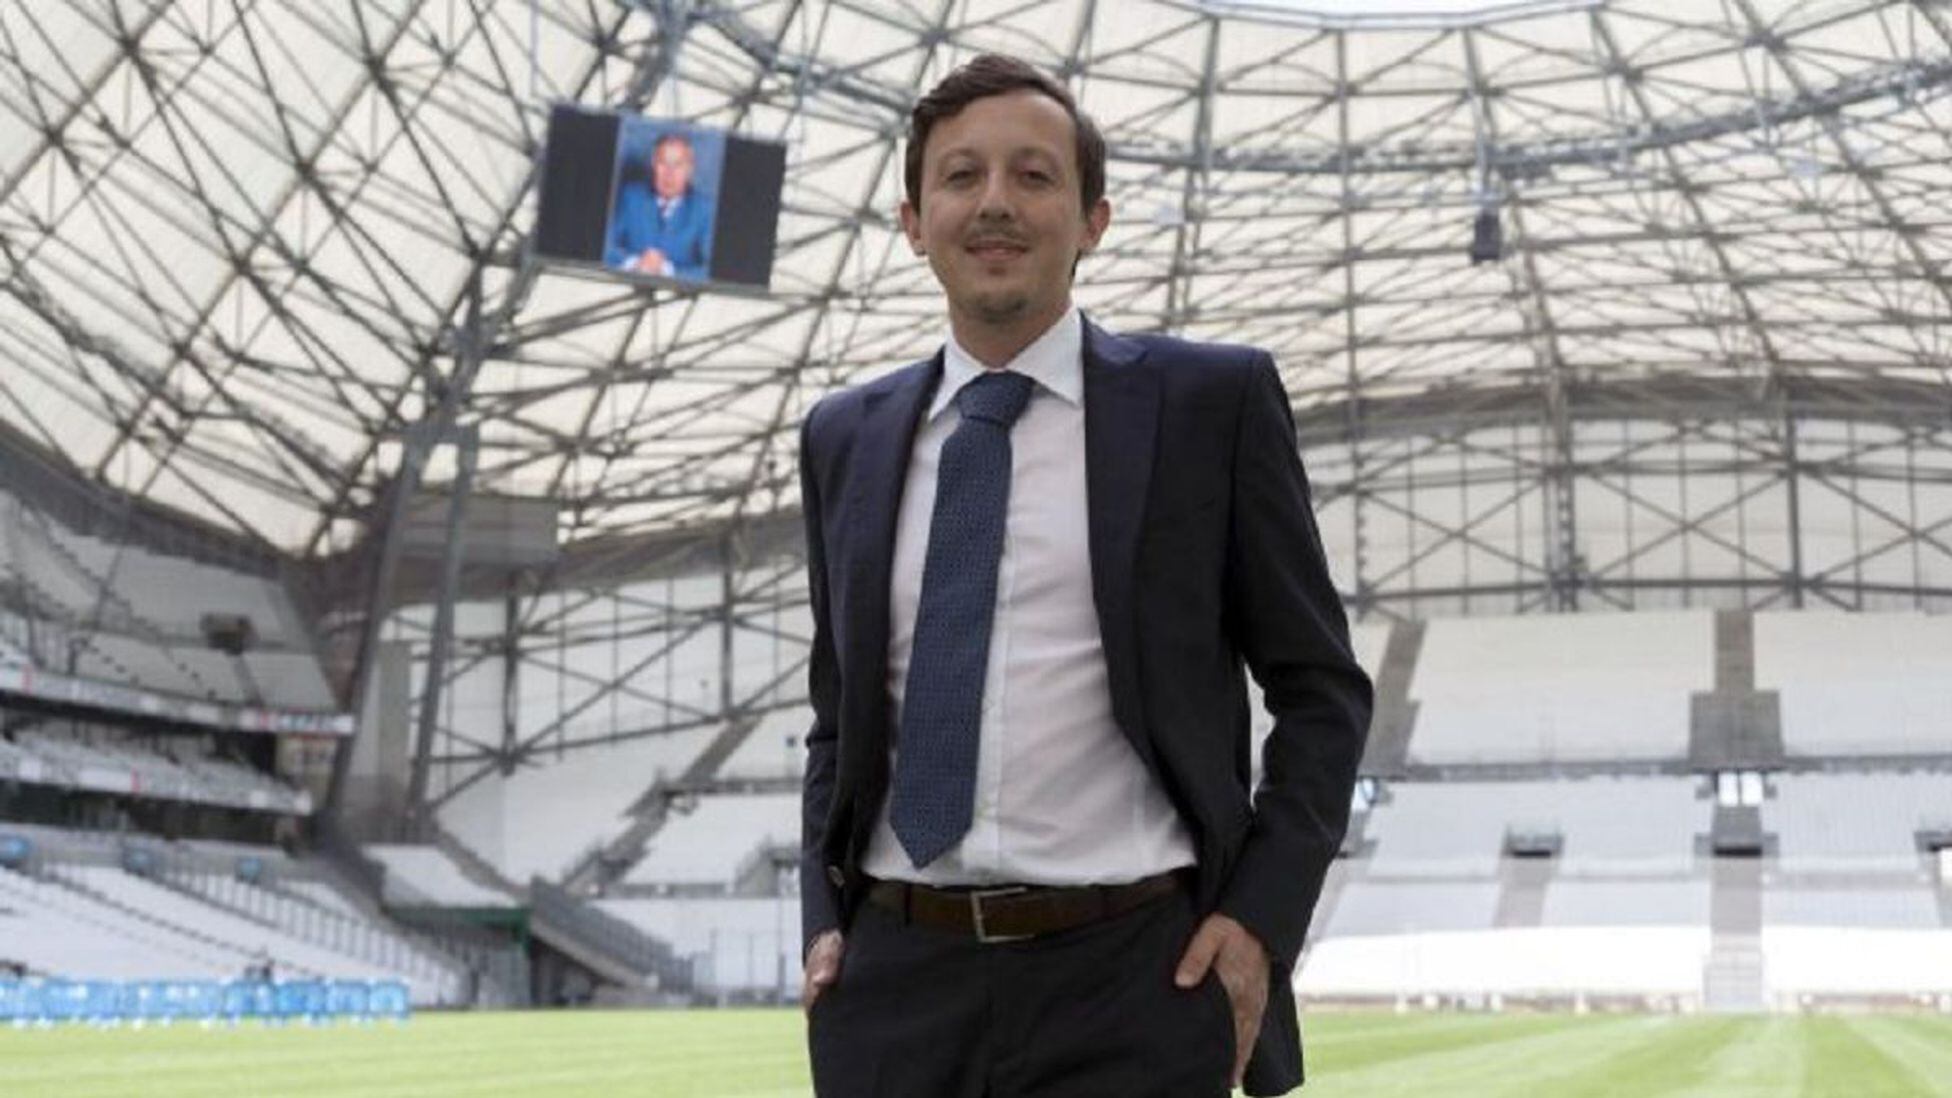 Ten confianza Agacharse Besugo De crear una web de fútbol con 14 años a presidente del Marsella - AS.com